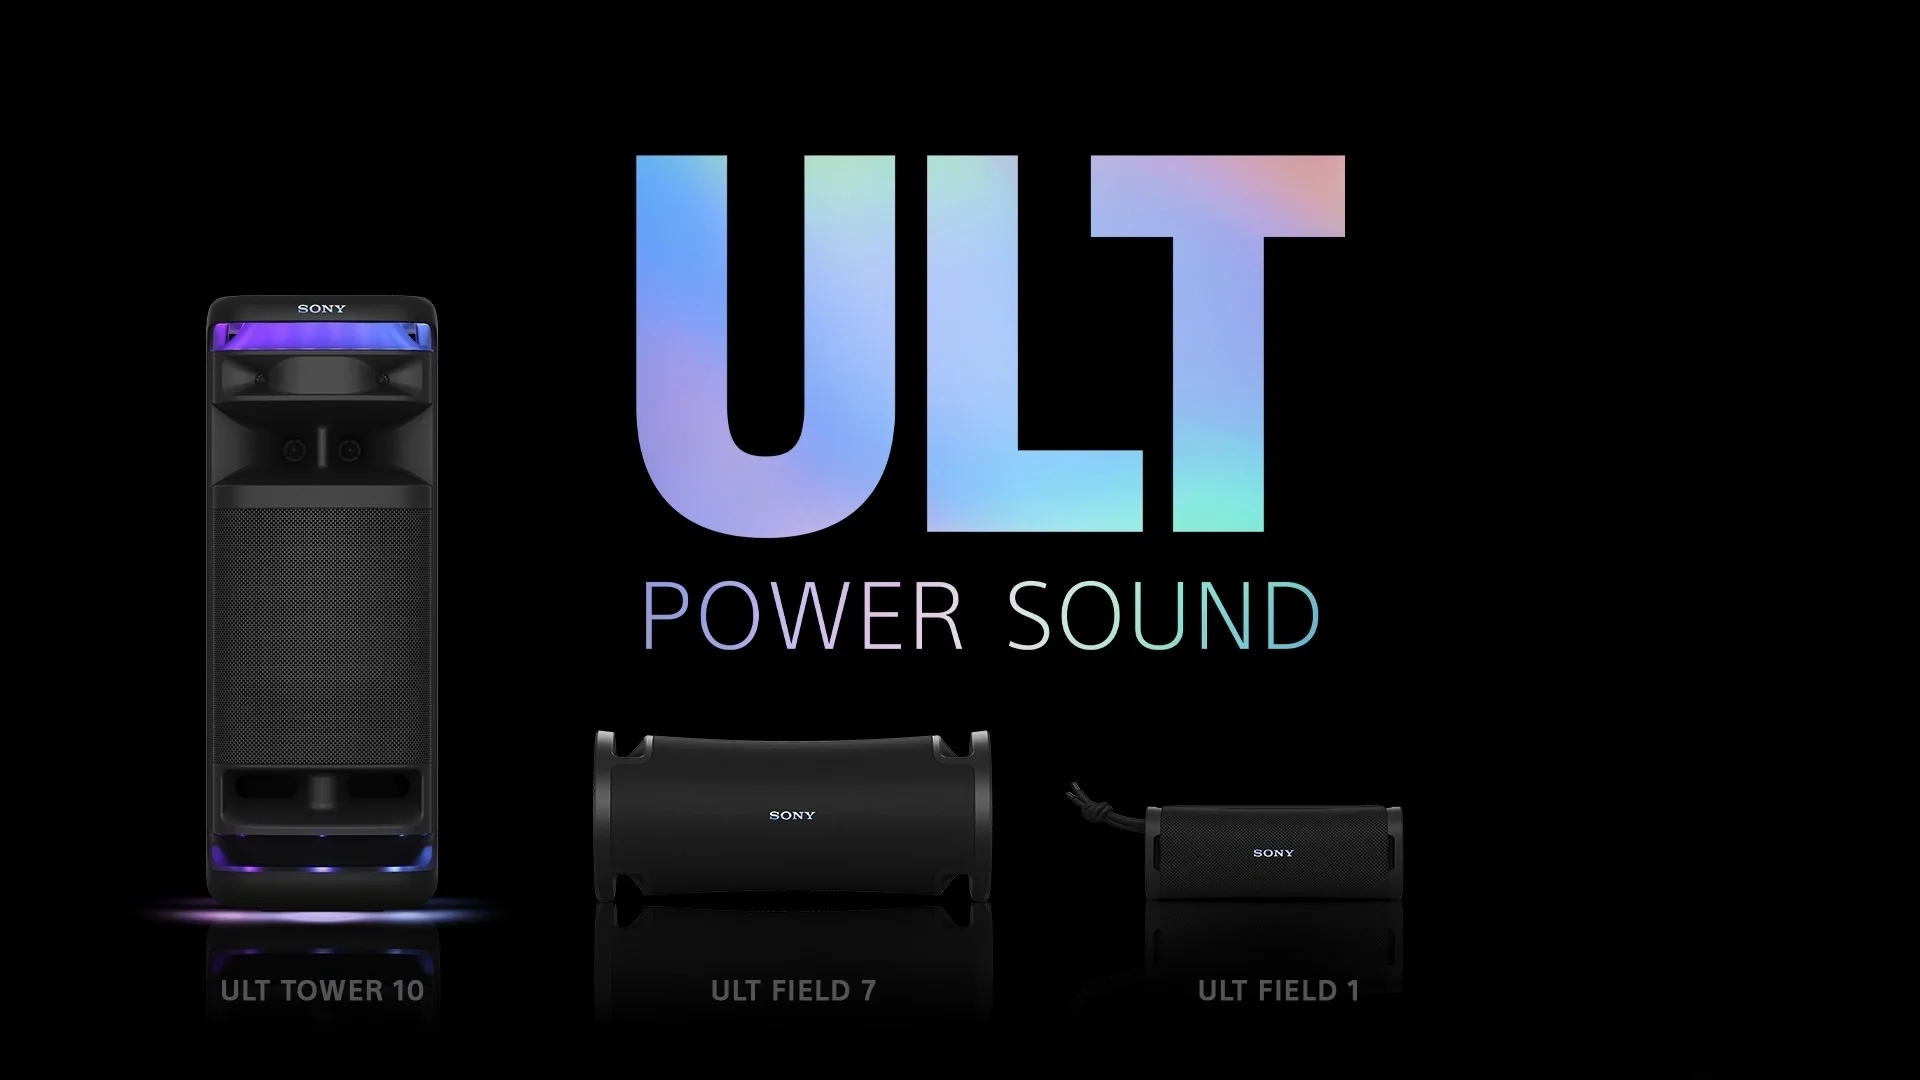 Sony hat die neuen Bluetooth-Lautsprecher der ULT Power-Serie vorgestellt - ULT Field 1, ULT Field 7 und ULT Tower 10